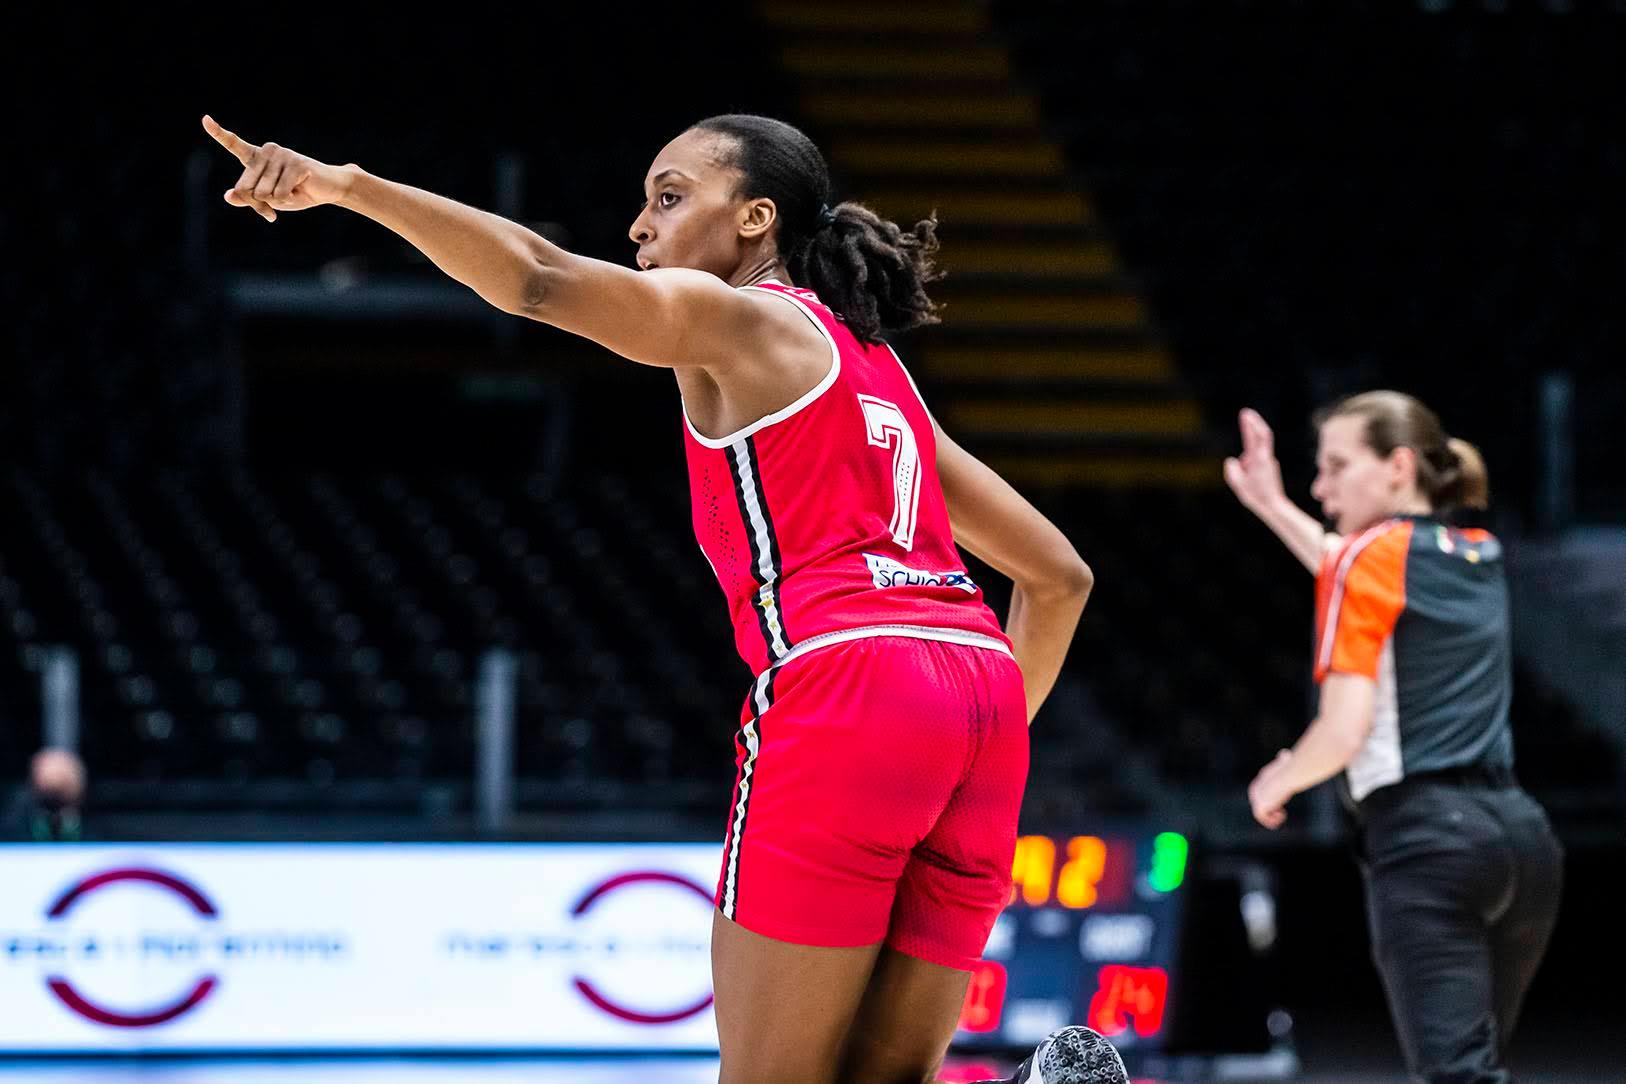     Basket-ball : la Martiniquaise Sandrine Gruda pas retenue dans la liste pour les JO 2024

